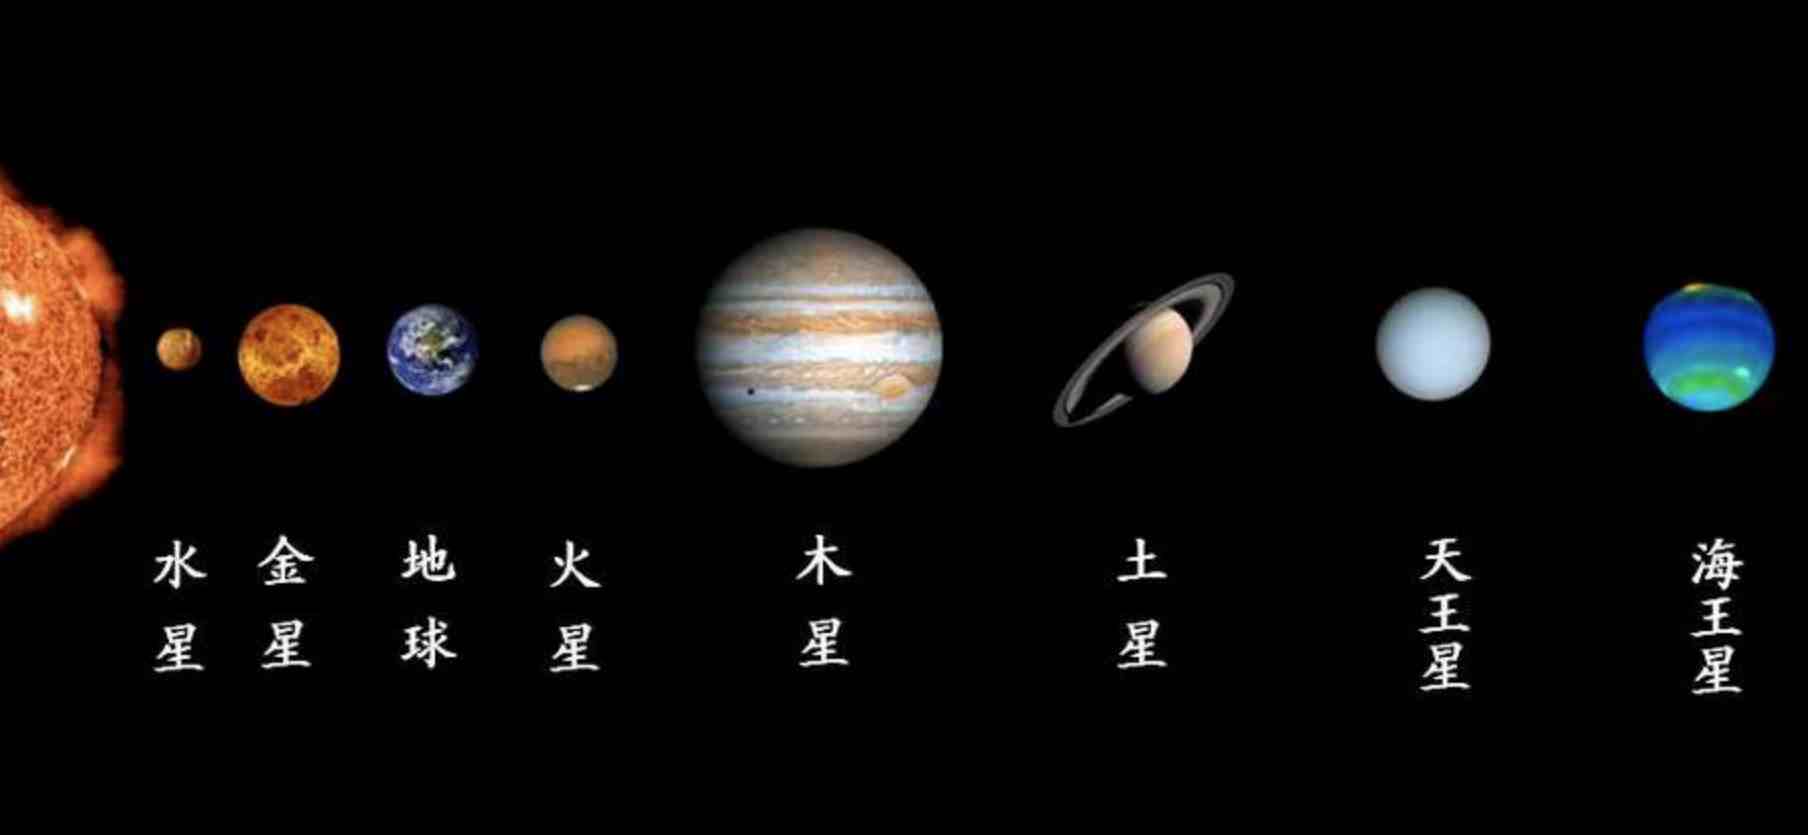 银河系中八大行星(八大行星排列顺序)